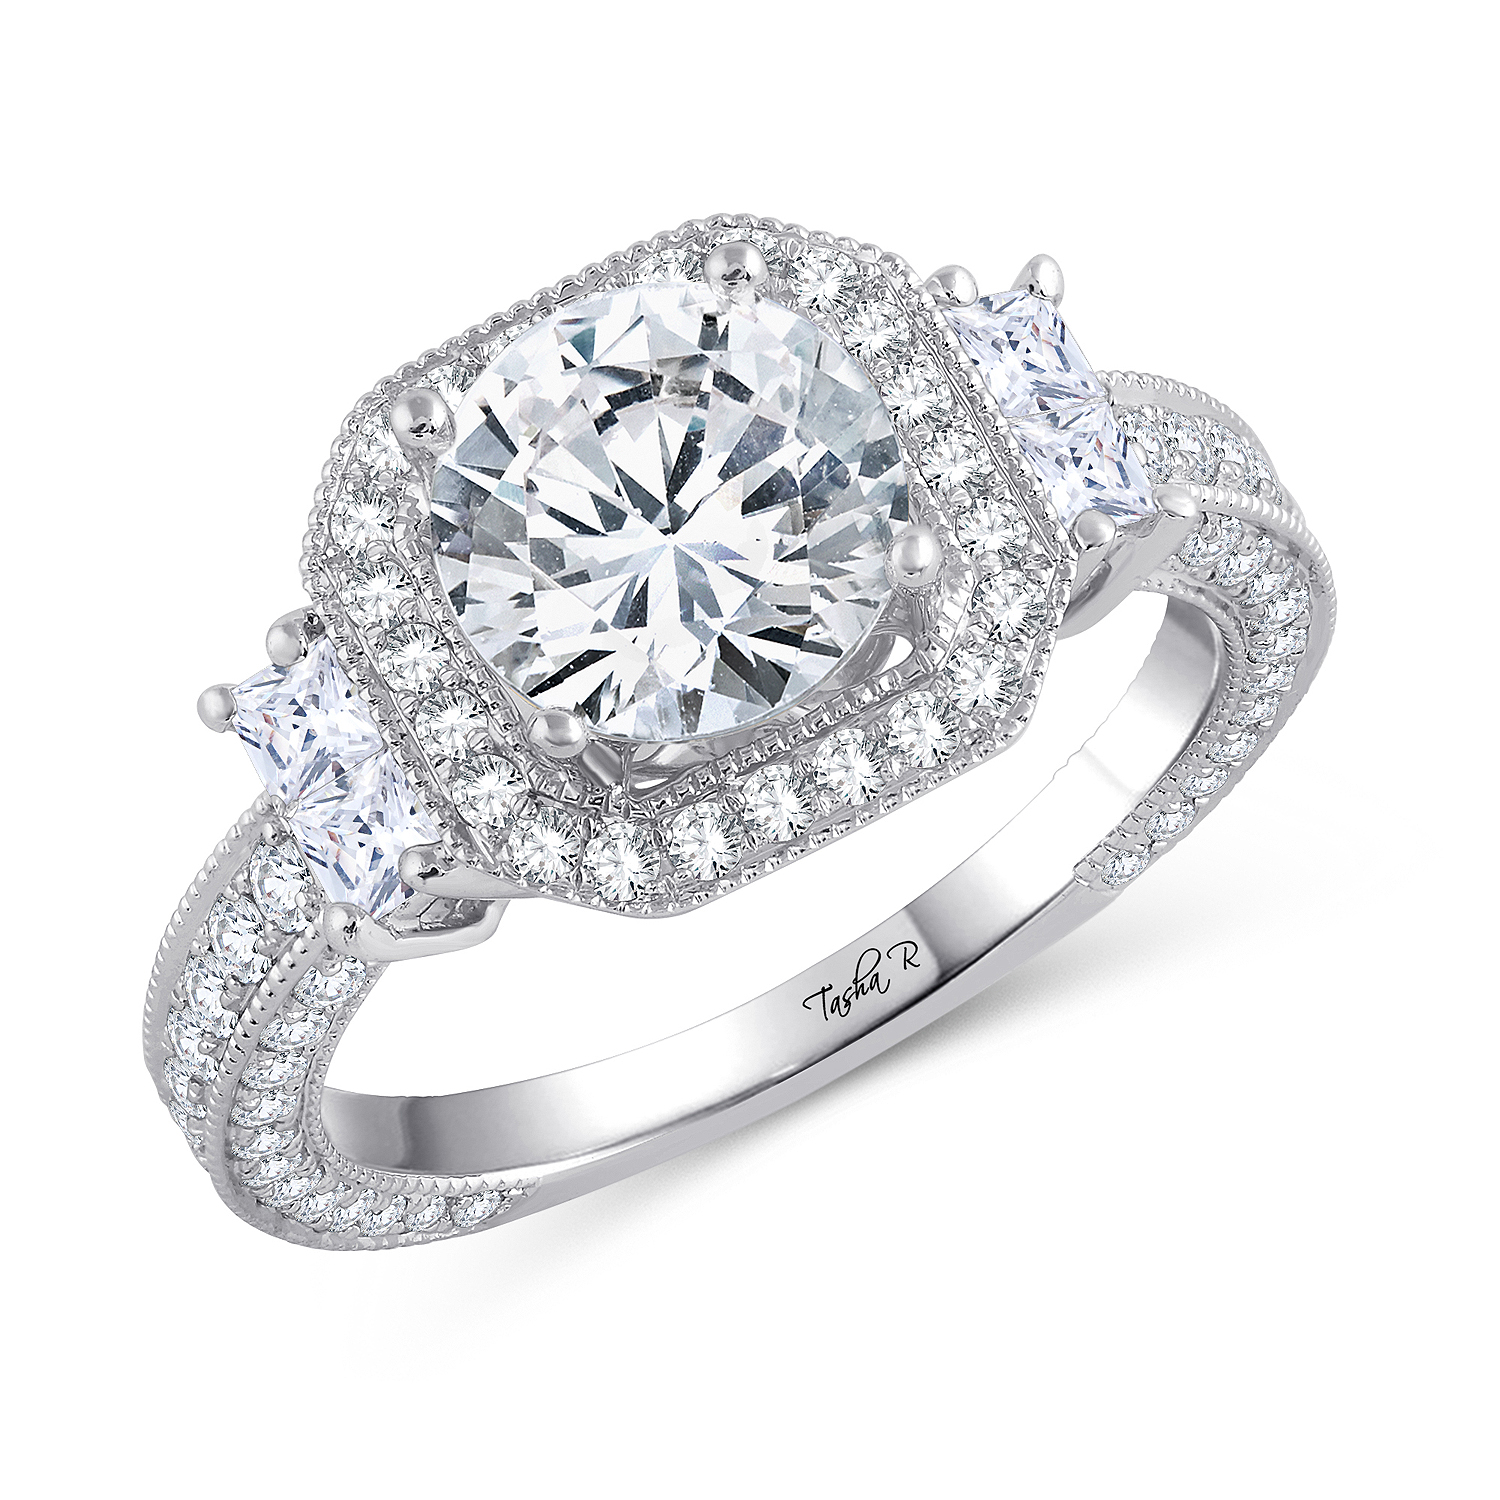 Luxe Semi-Mount Ring - Karat Jewelry Store, Huntington NY 11746